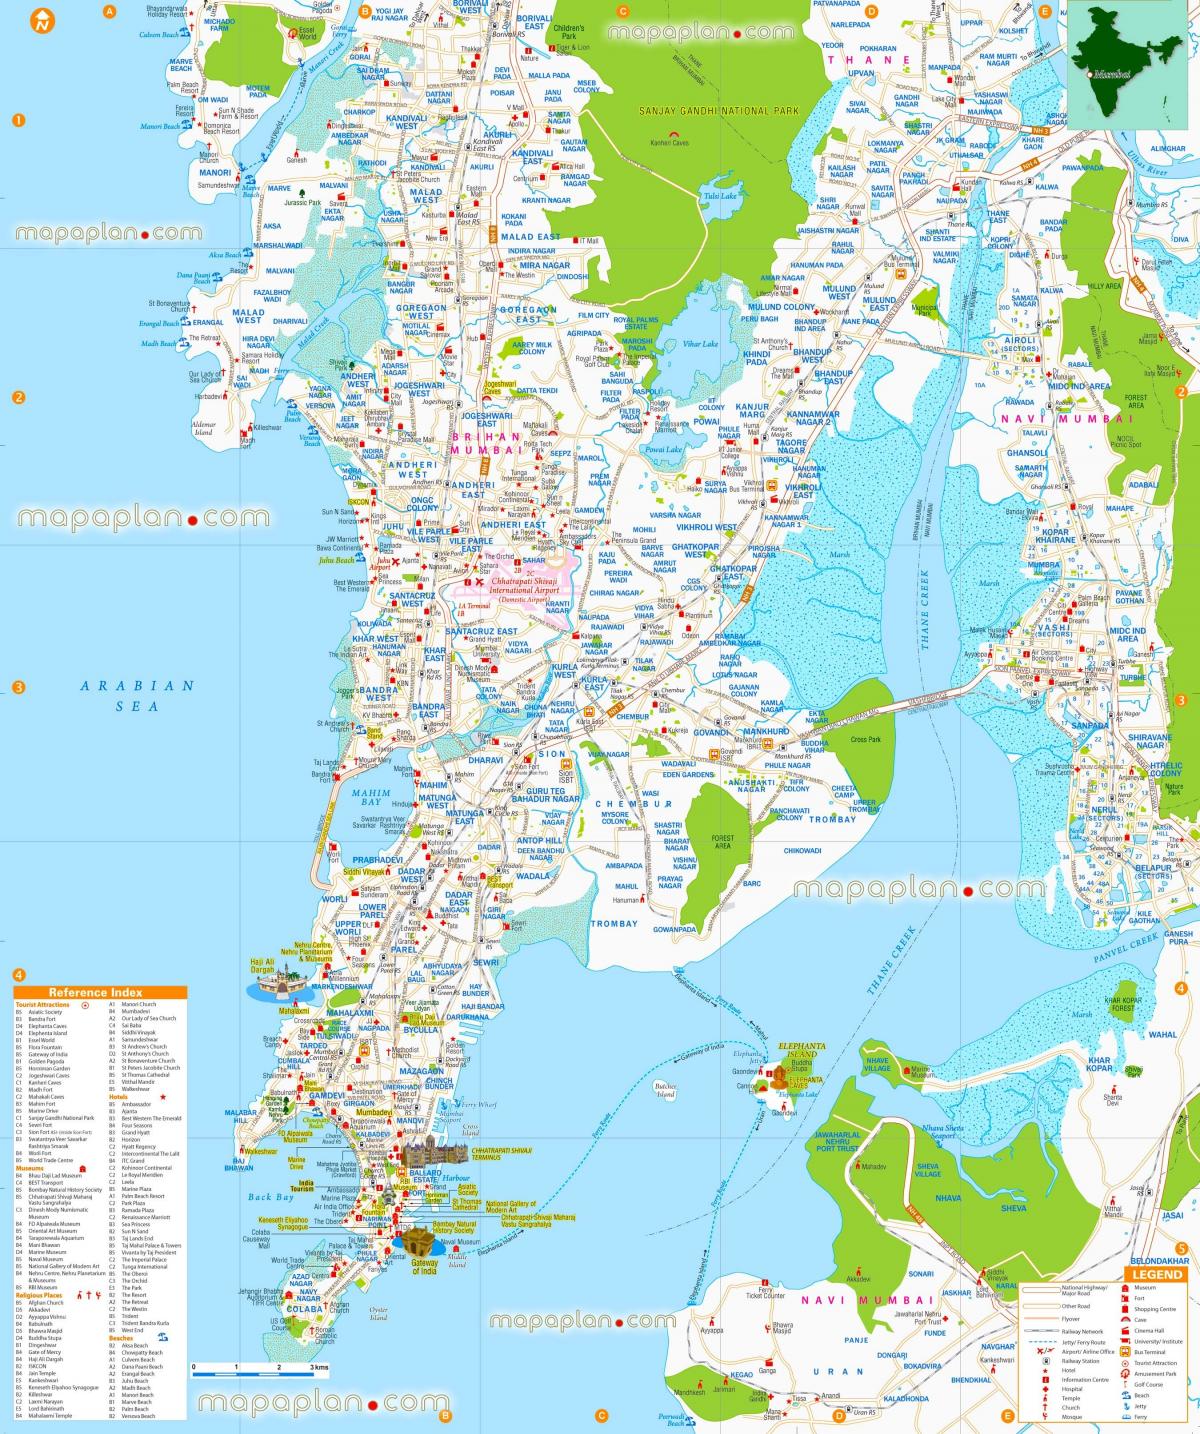 Mumbai - Mapa turístico de Bombaim